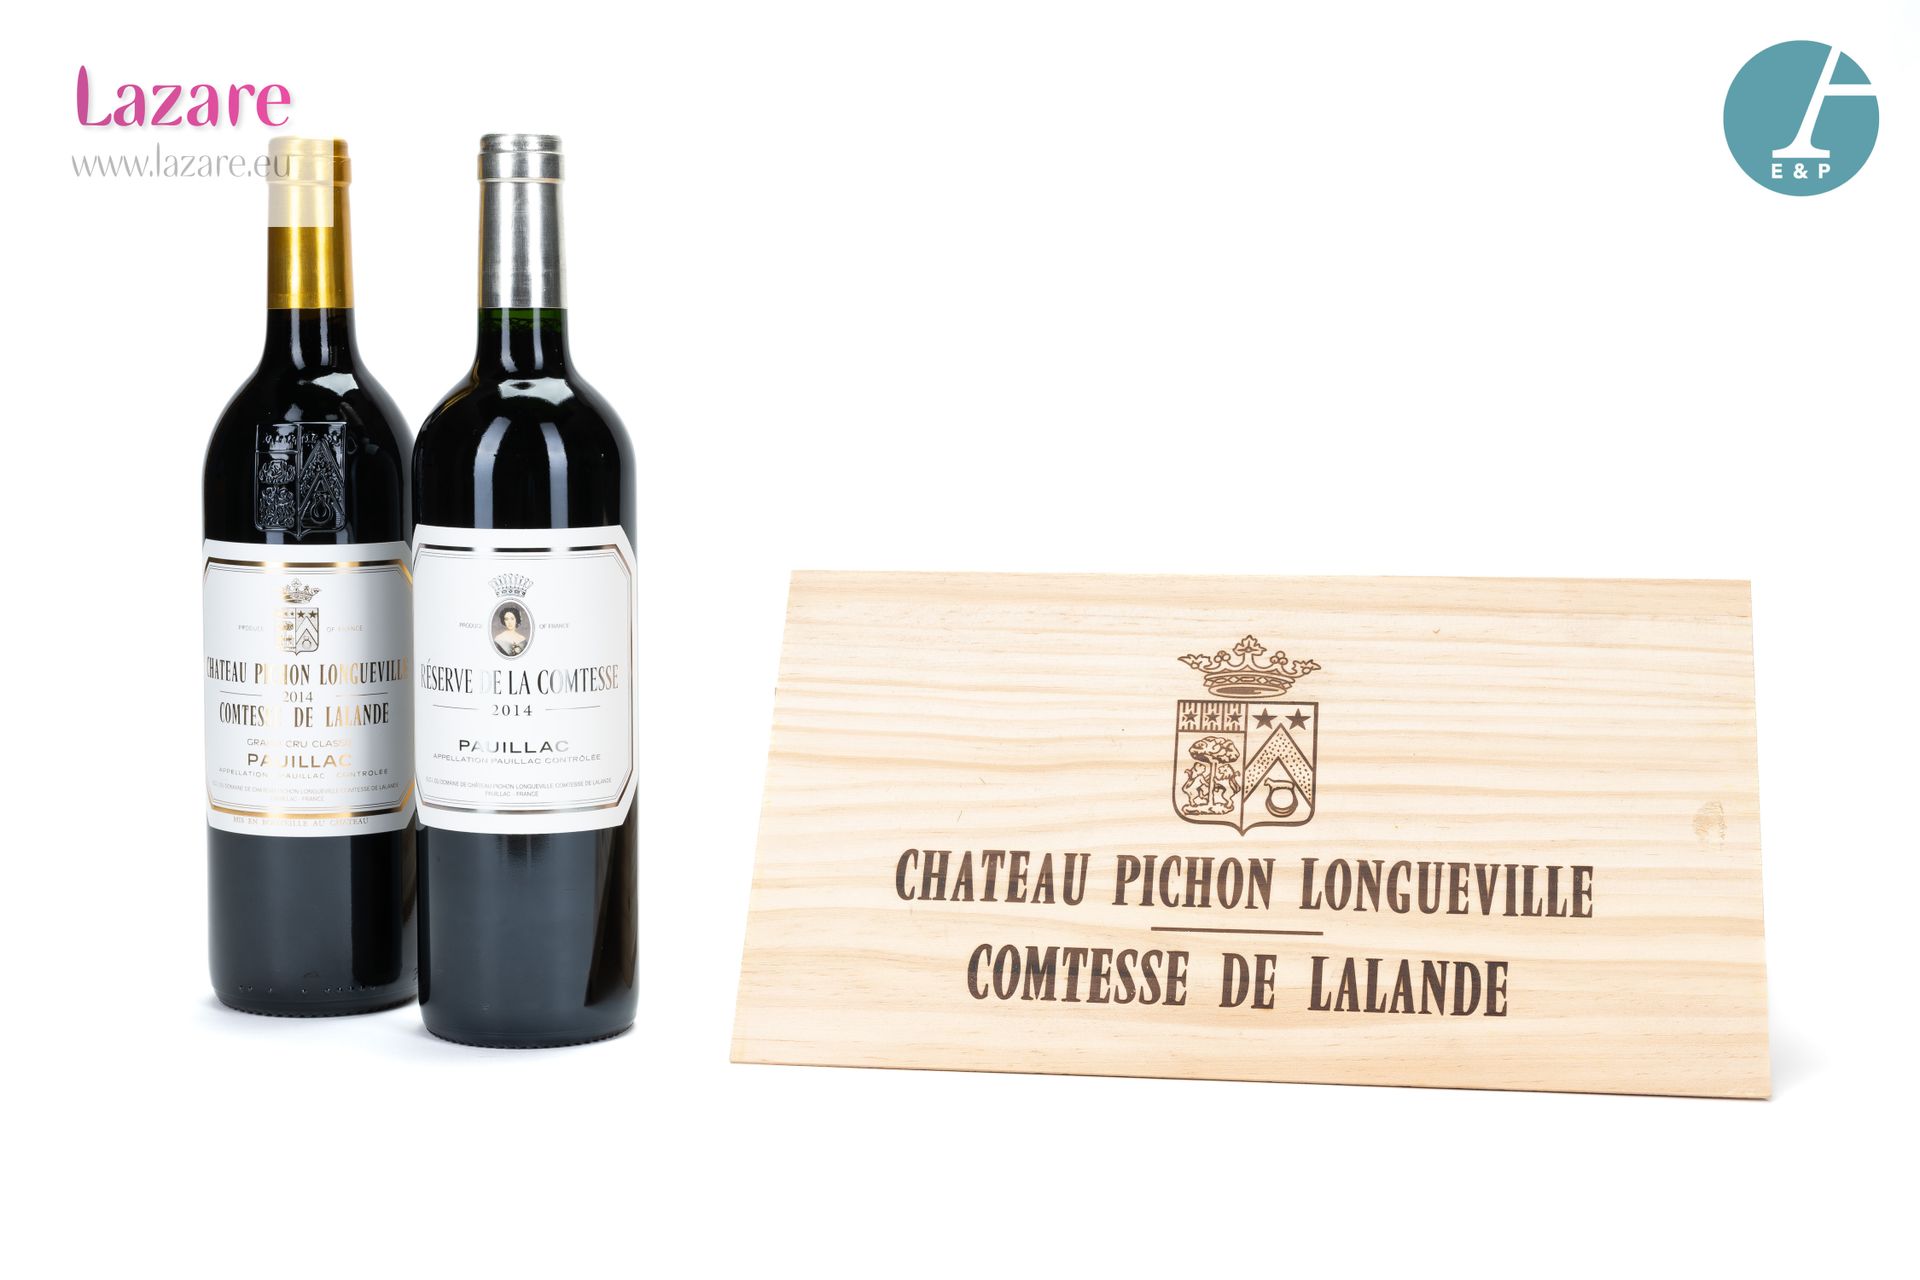 En provenance directe du château 拍卖会上，两瓶装在原来的木箱中，包括:

- 1瓶 CHATEAU PICHON COMTES&hellip;